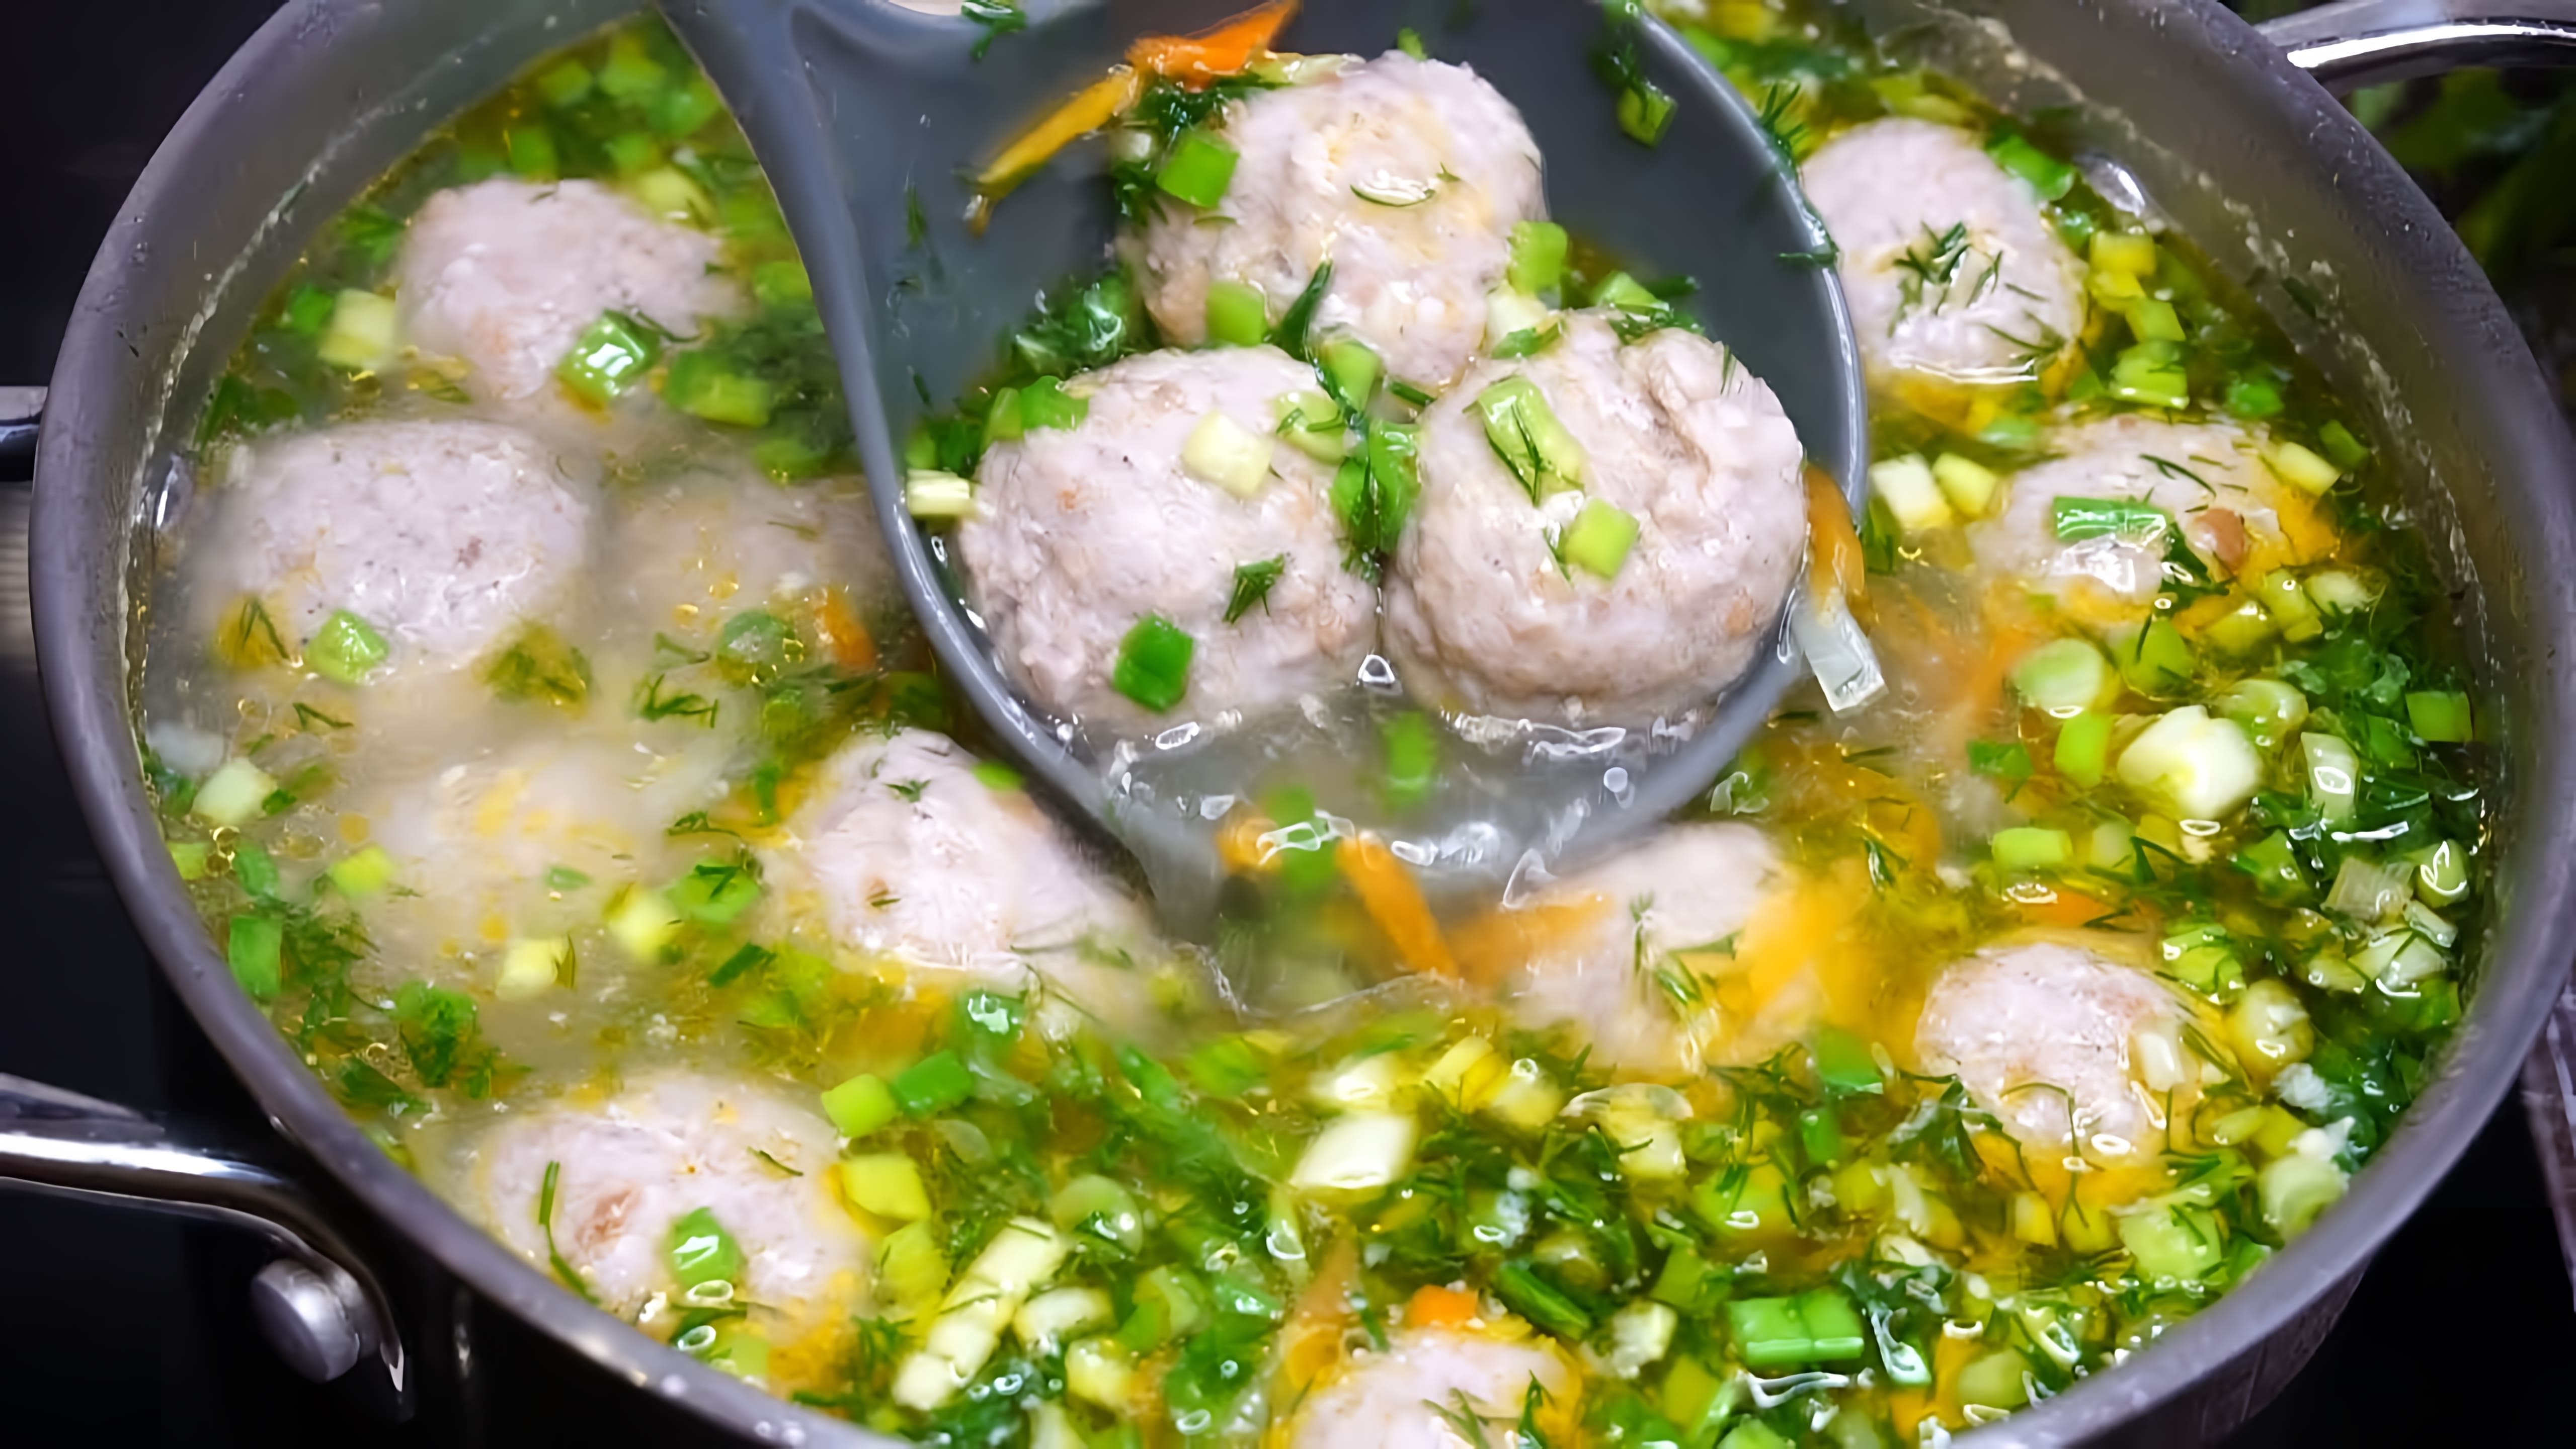 В этом видео демонстрируется рецепт приготовления супа с фрикадельками